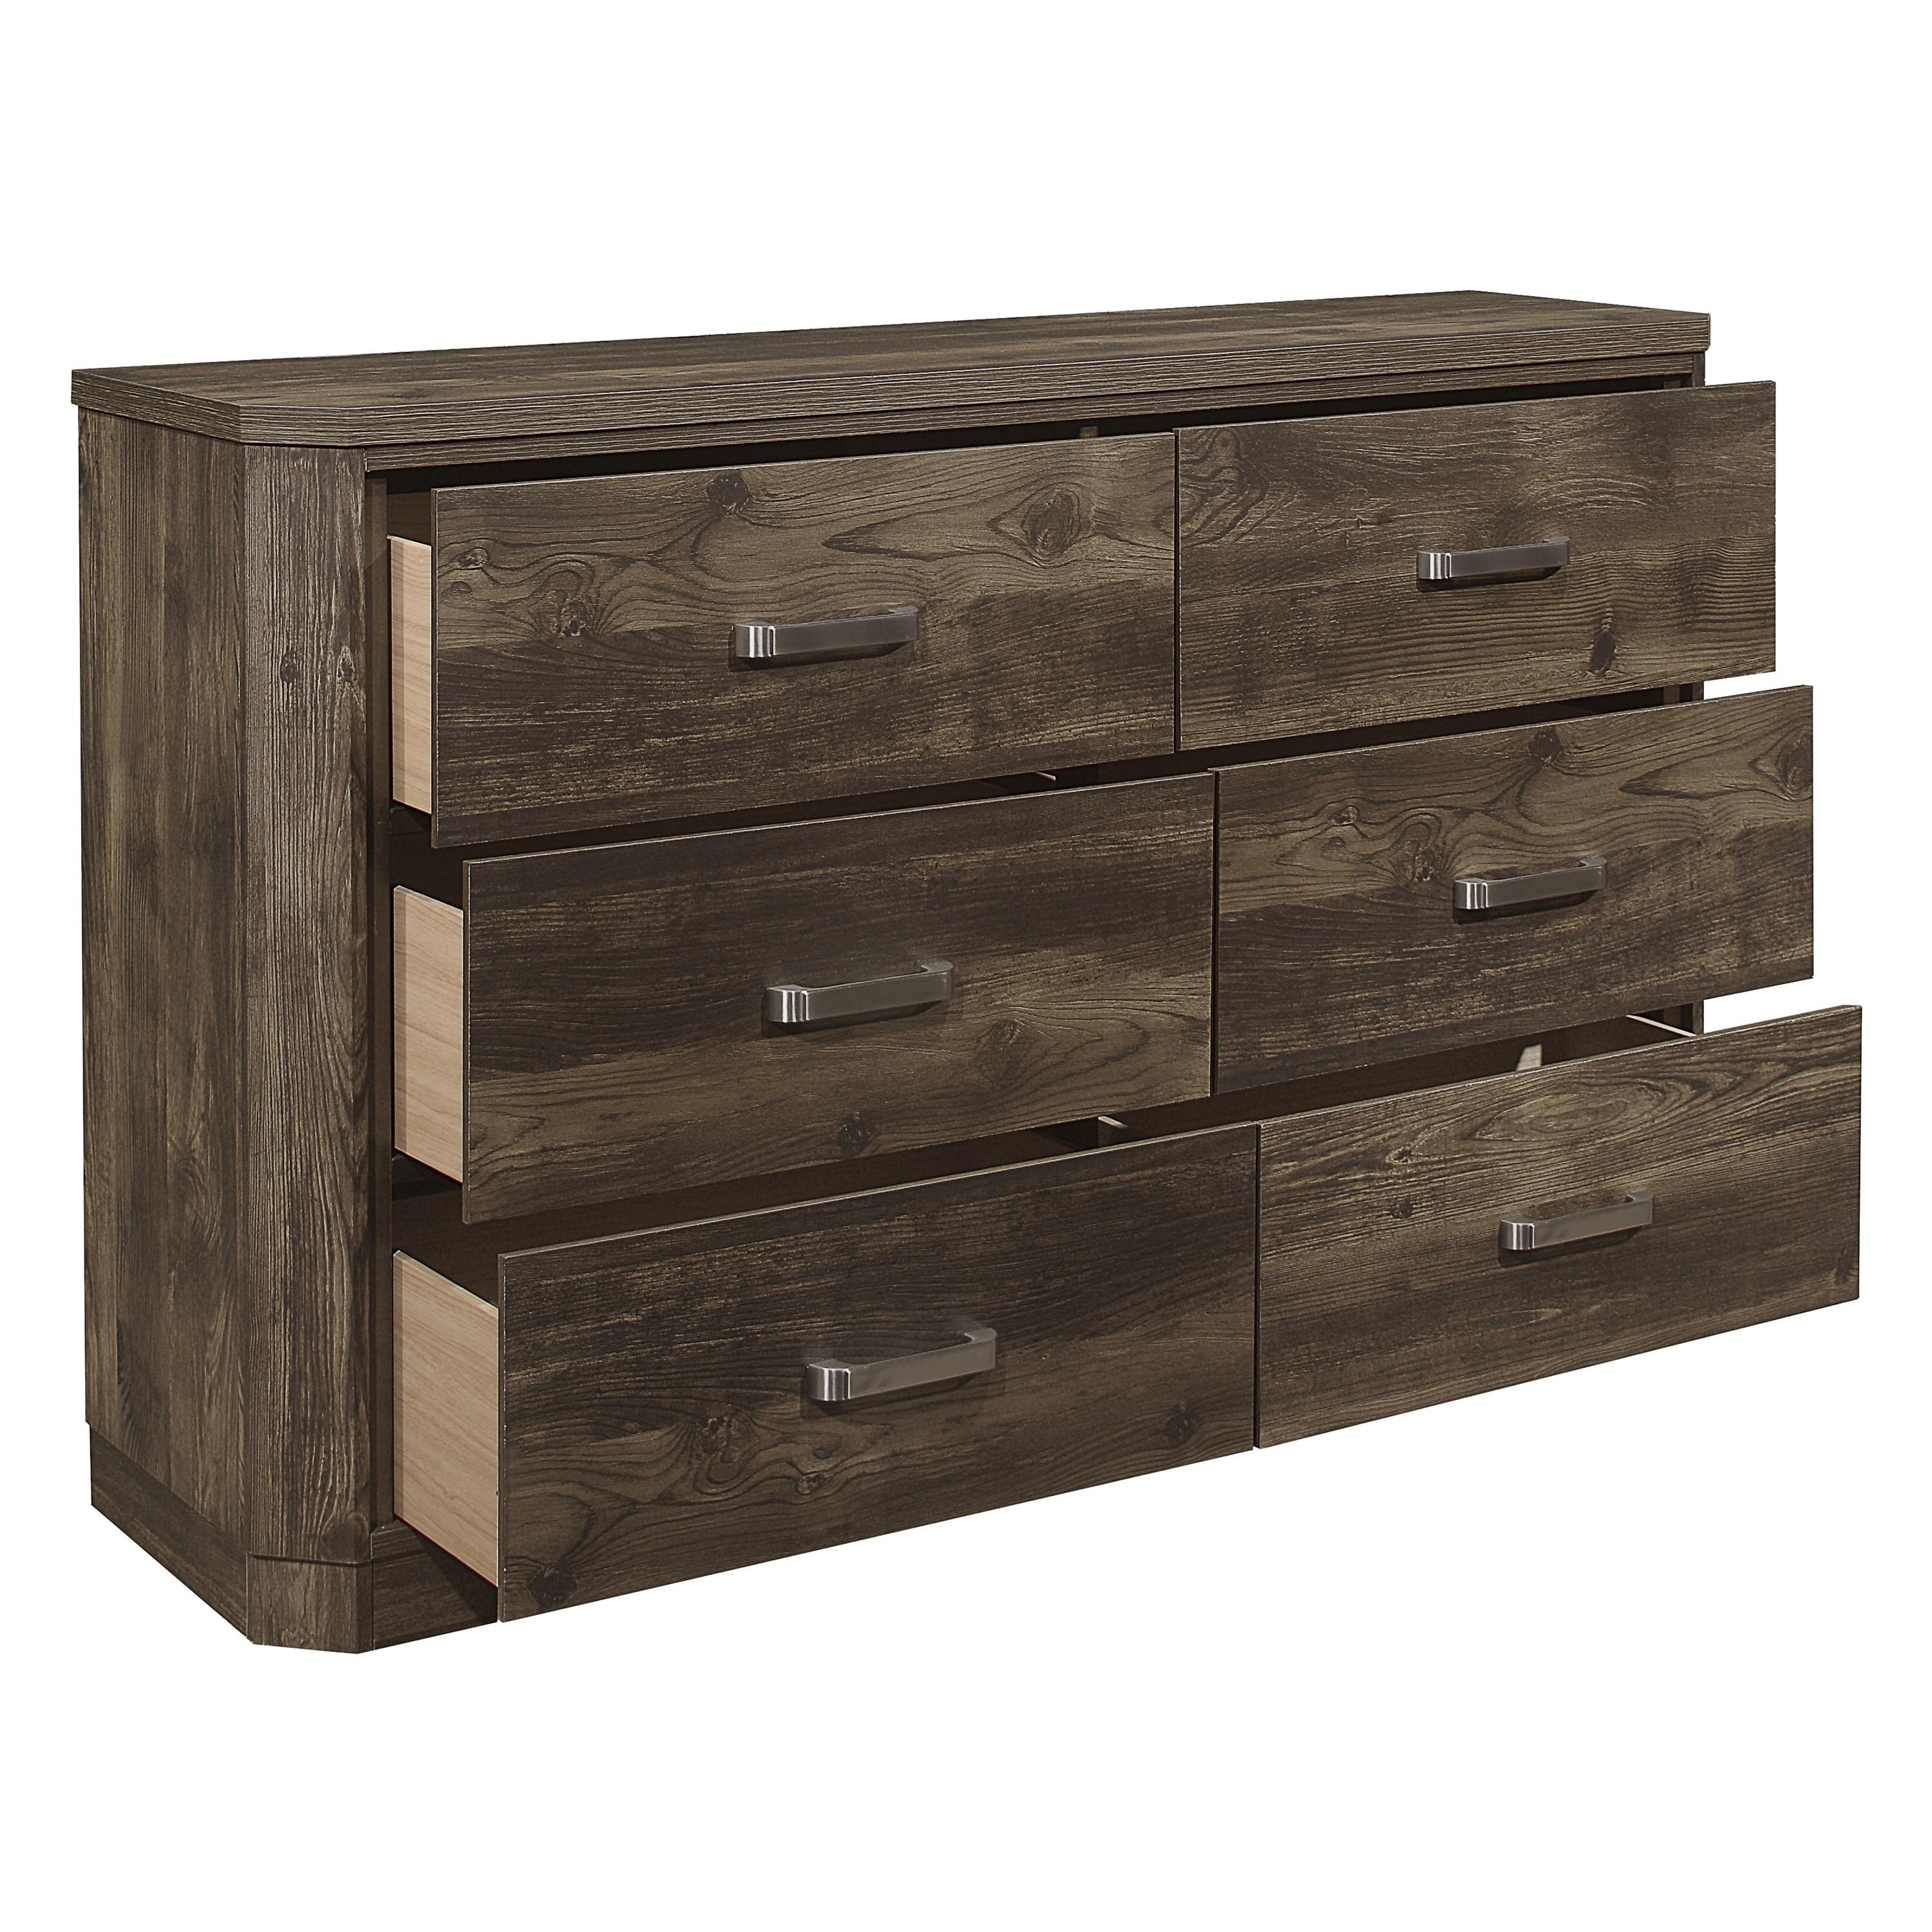 

    
Transitional Rustic Brown Wood Dresser Homelegance 1509-5 Jocelyn
